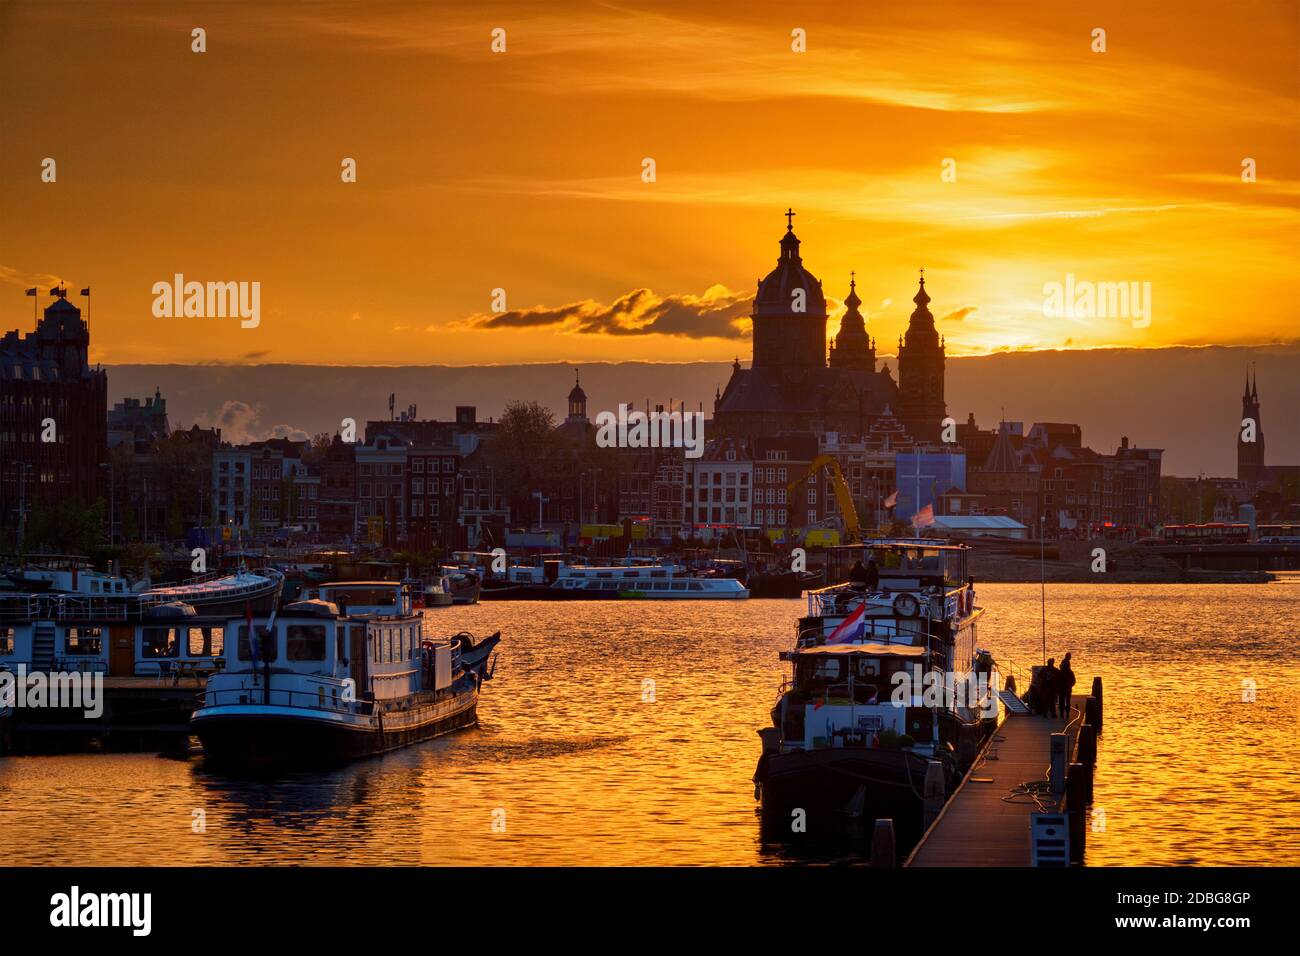 Skyline di Amsterdam con la Chiesa di San Nicola (Sint-Nicolaaskerk) e barche sul molo al tramonto con il cielo drammatico. Amsterdam, Paesi Bassi Foto Stock